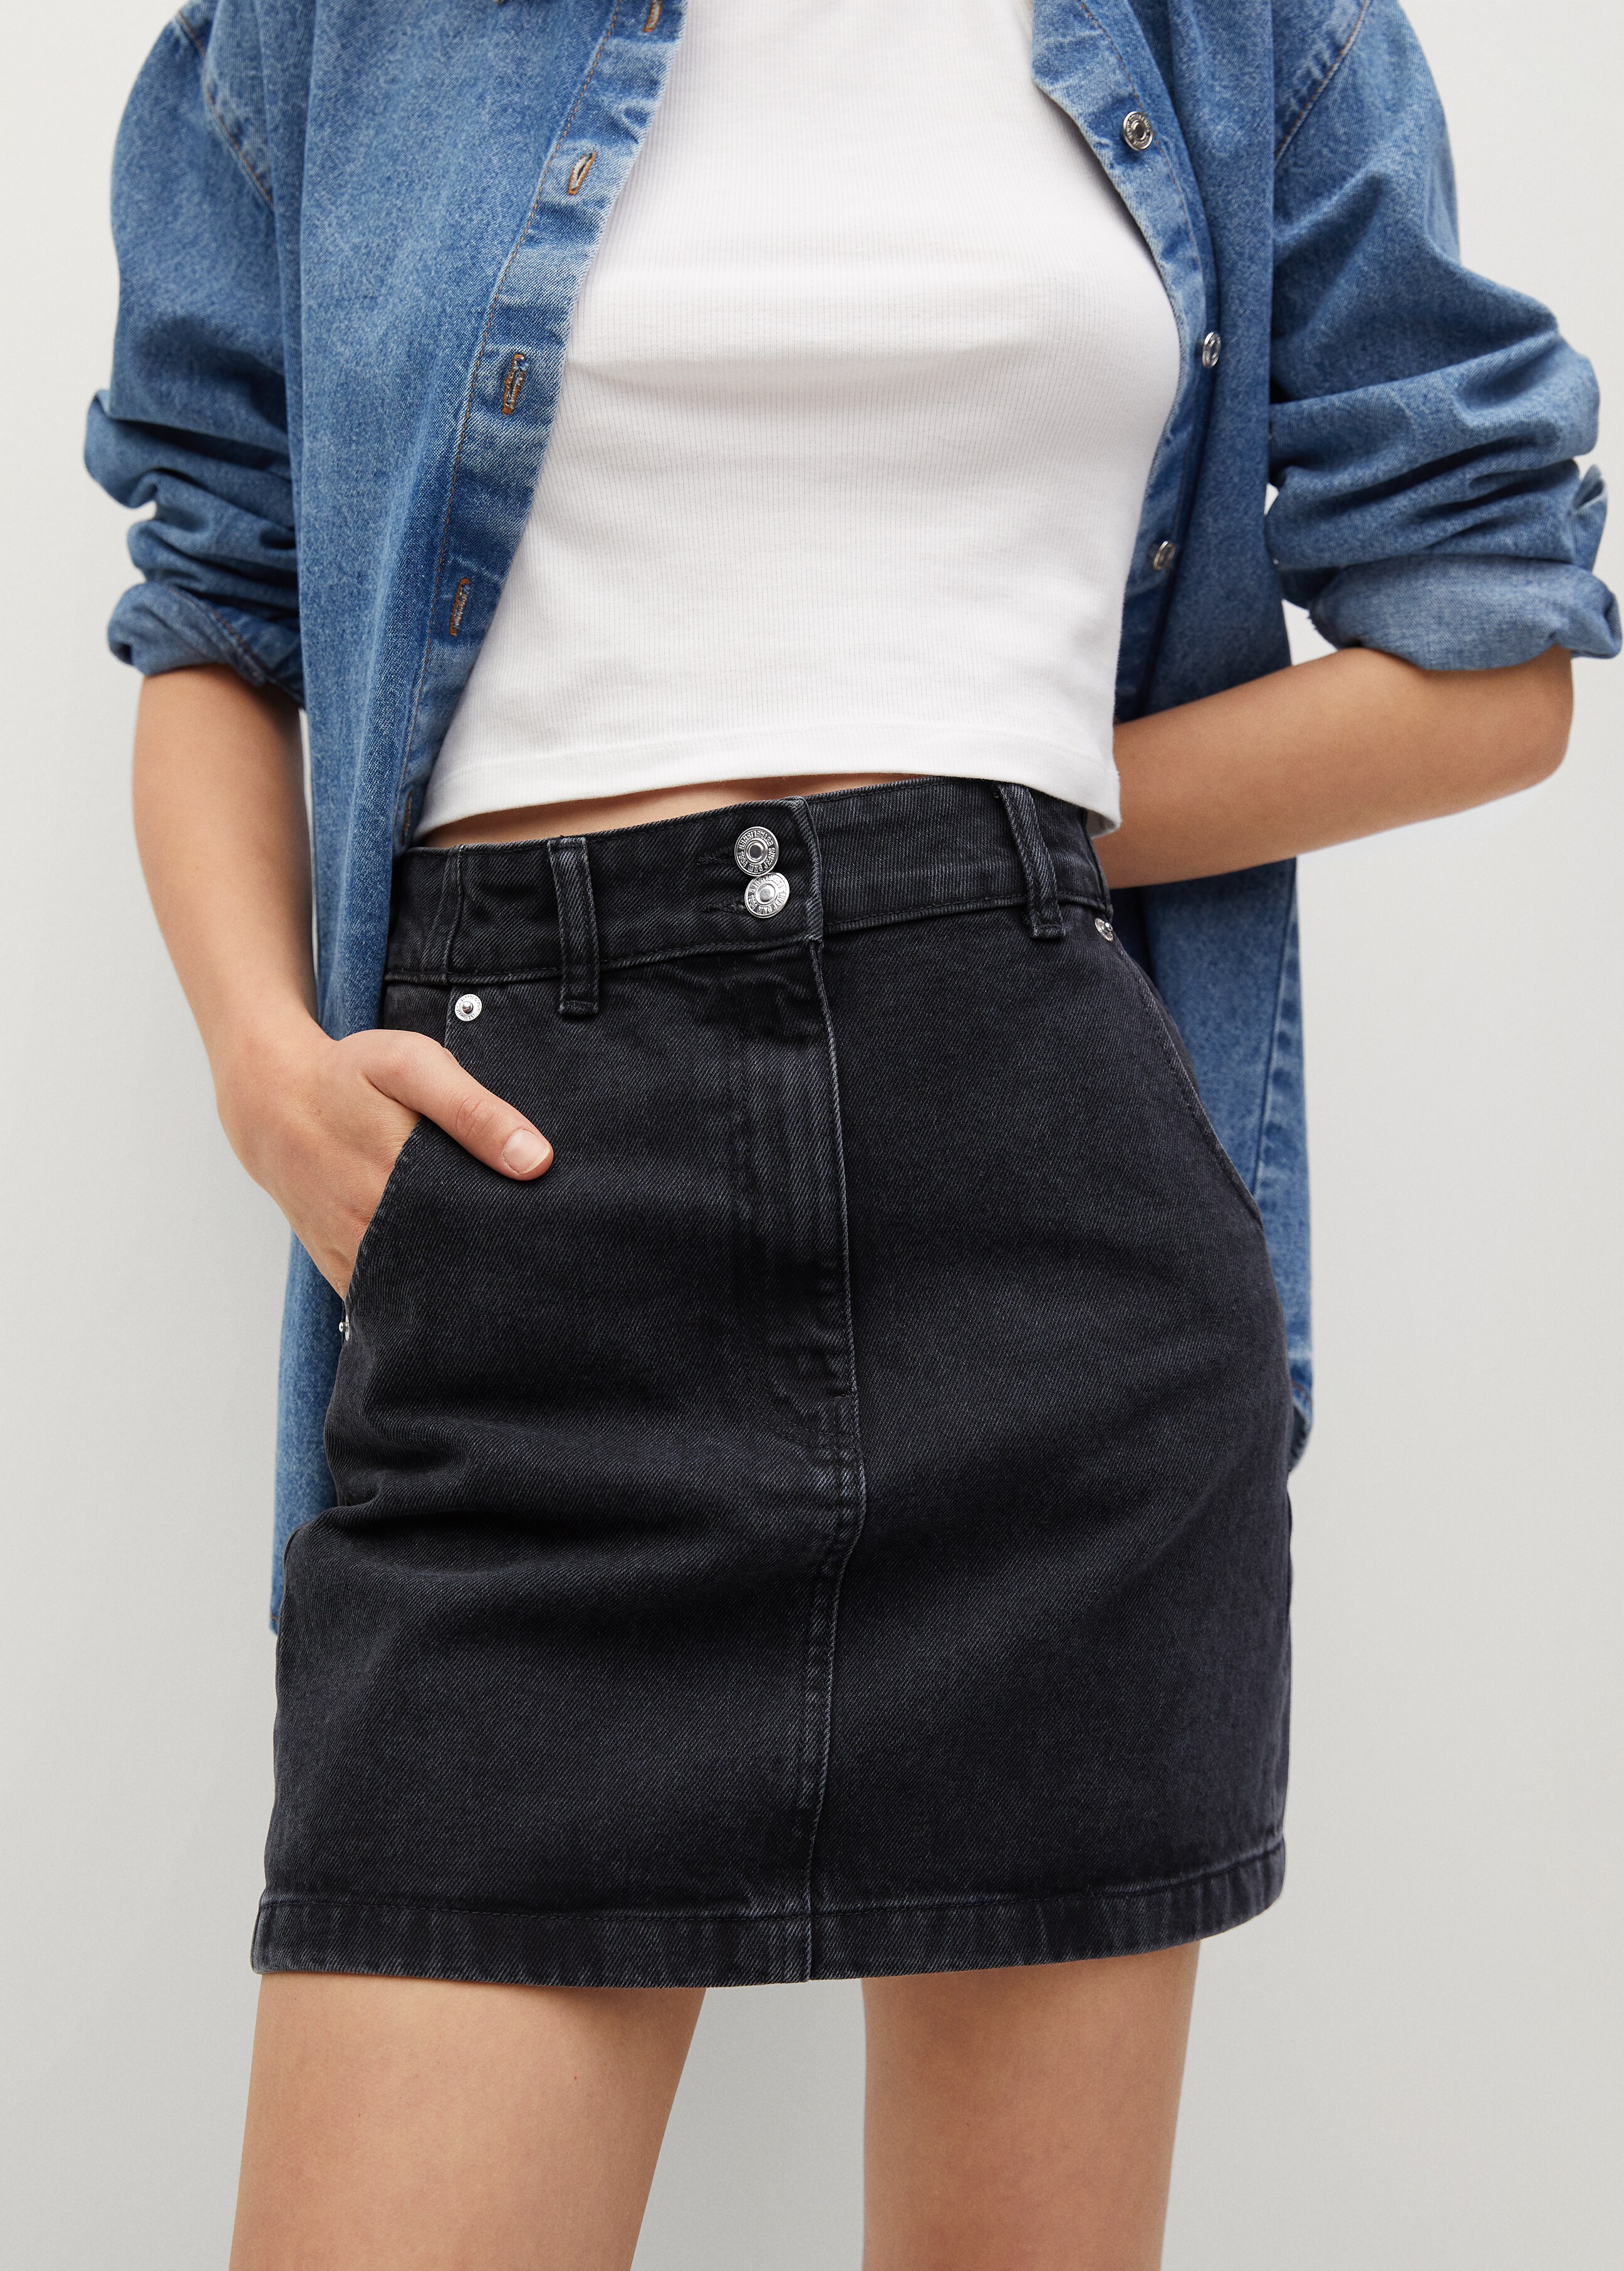 Minifalda denim bolsillos - Plano medio